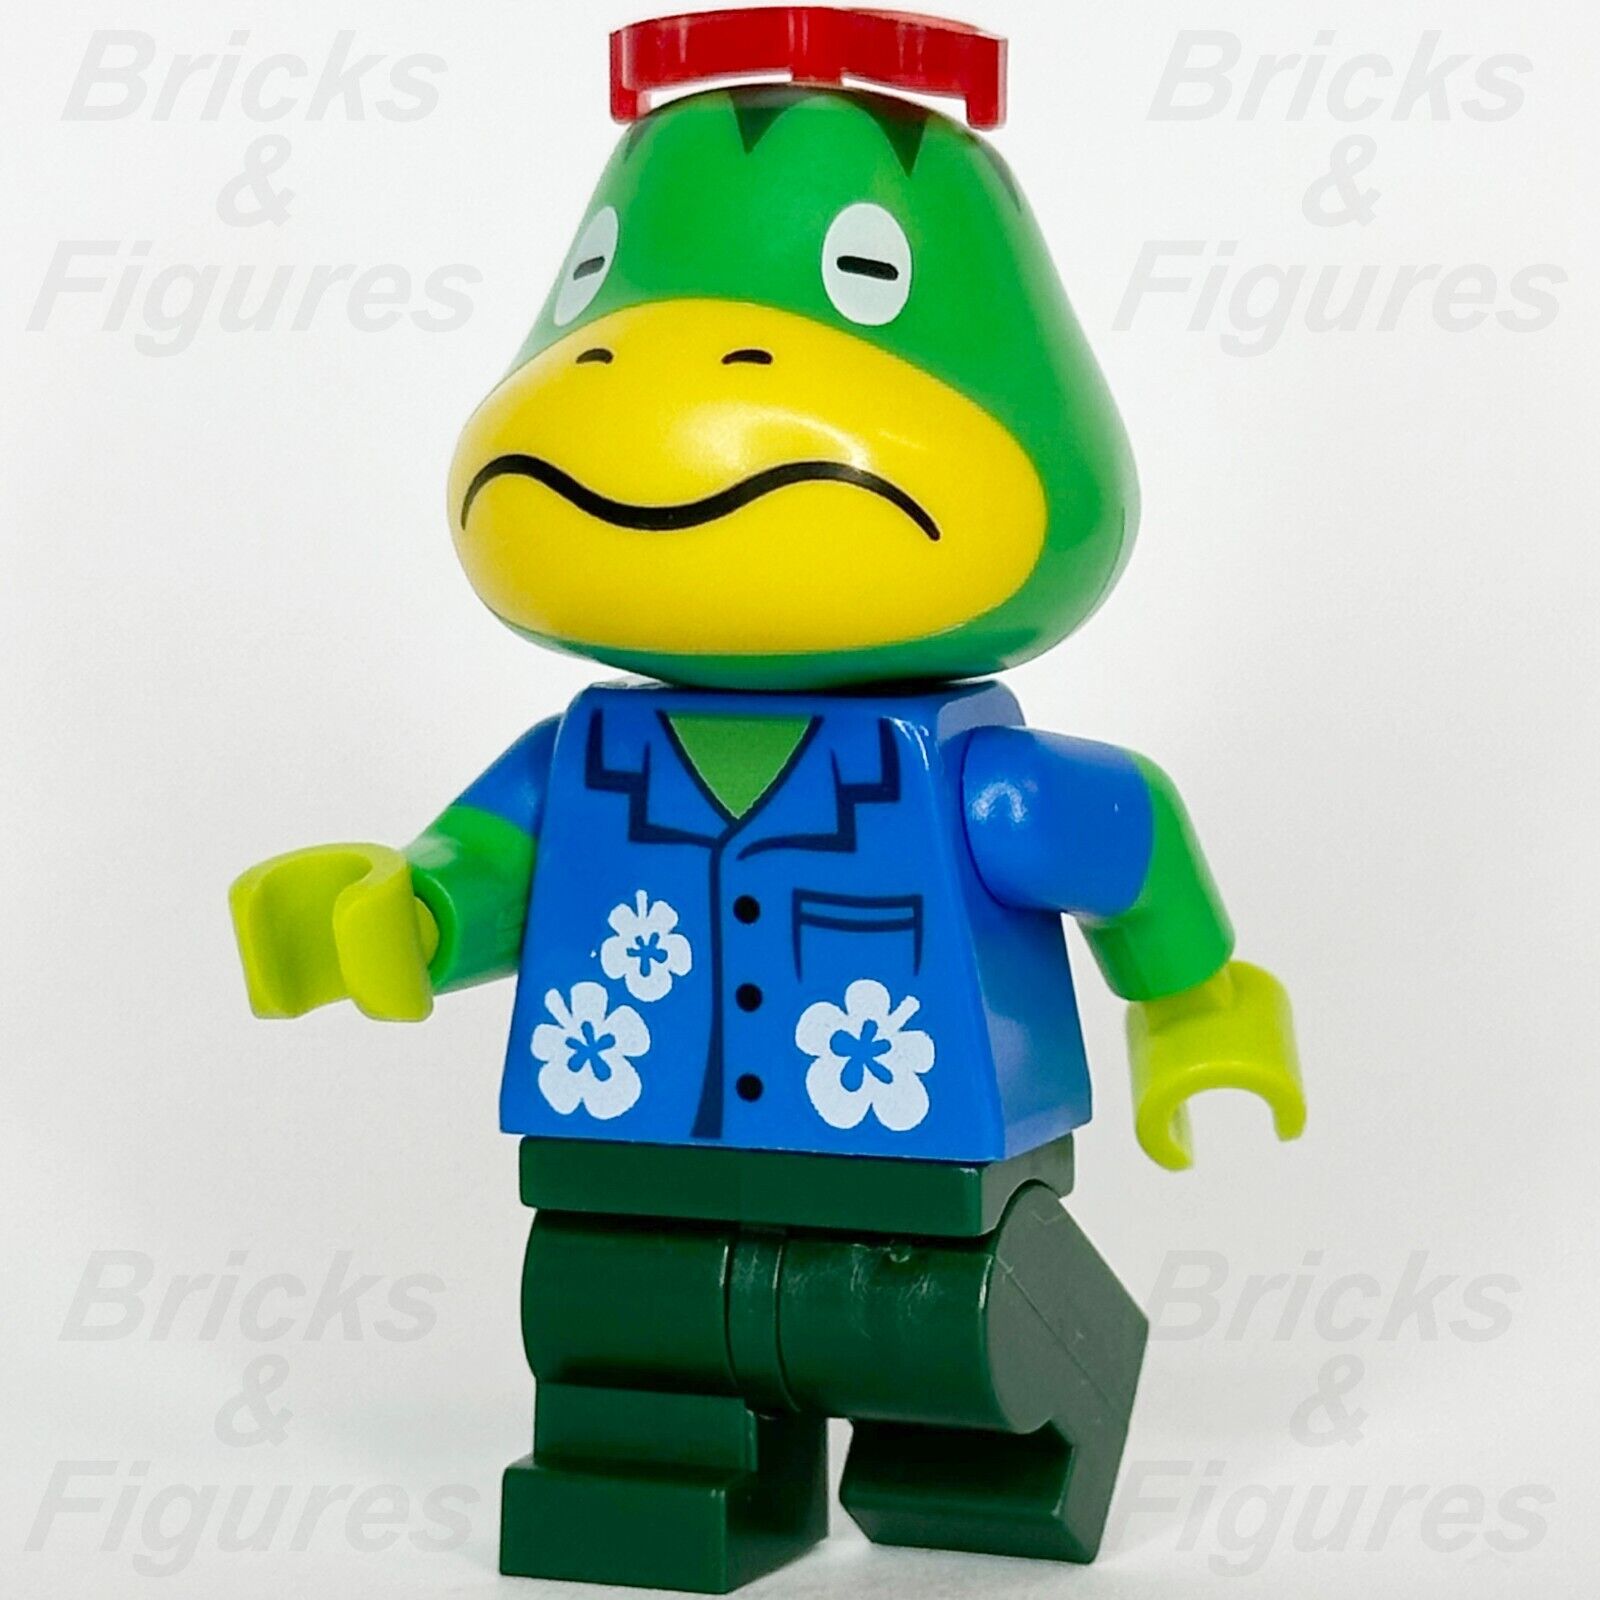 LEGO Animal Crossing Kapp'n Minifigure Turtle Minifig 77048 ani005 - Bricks & Figures